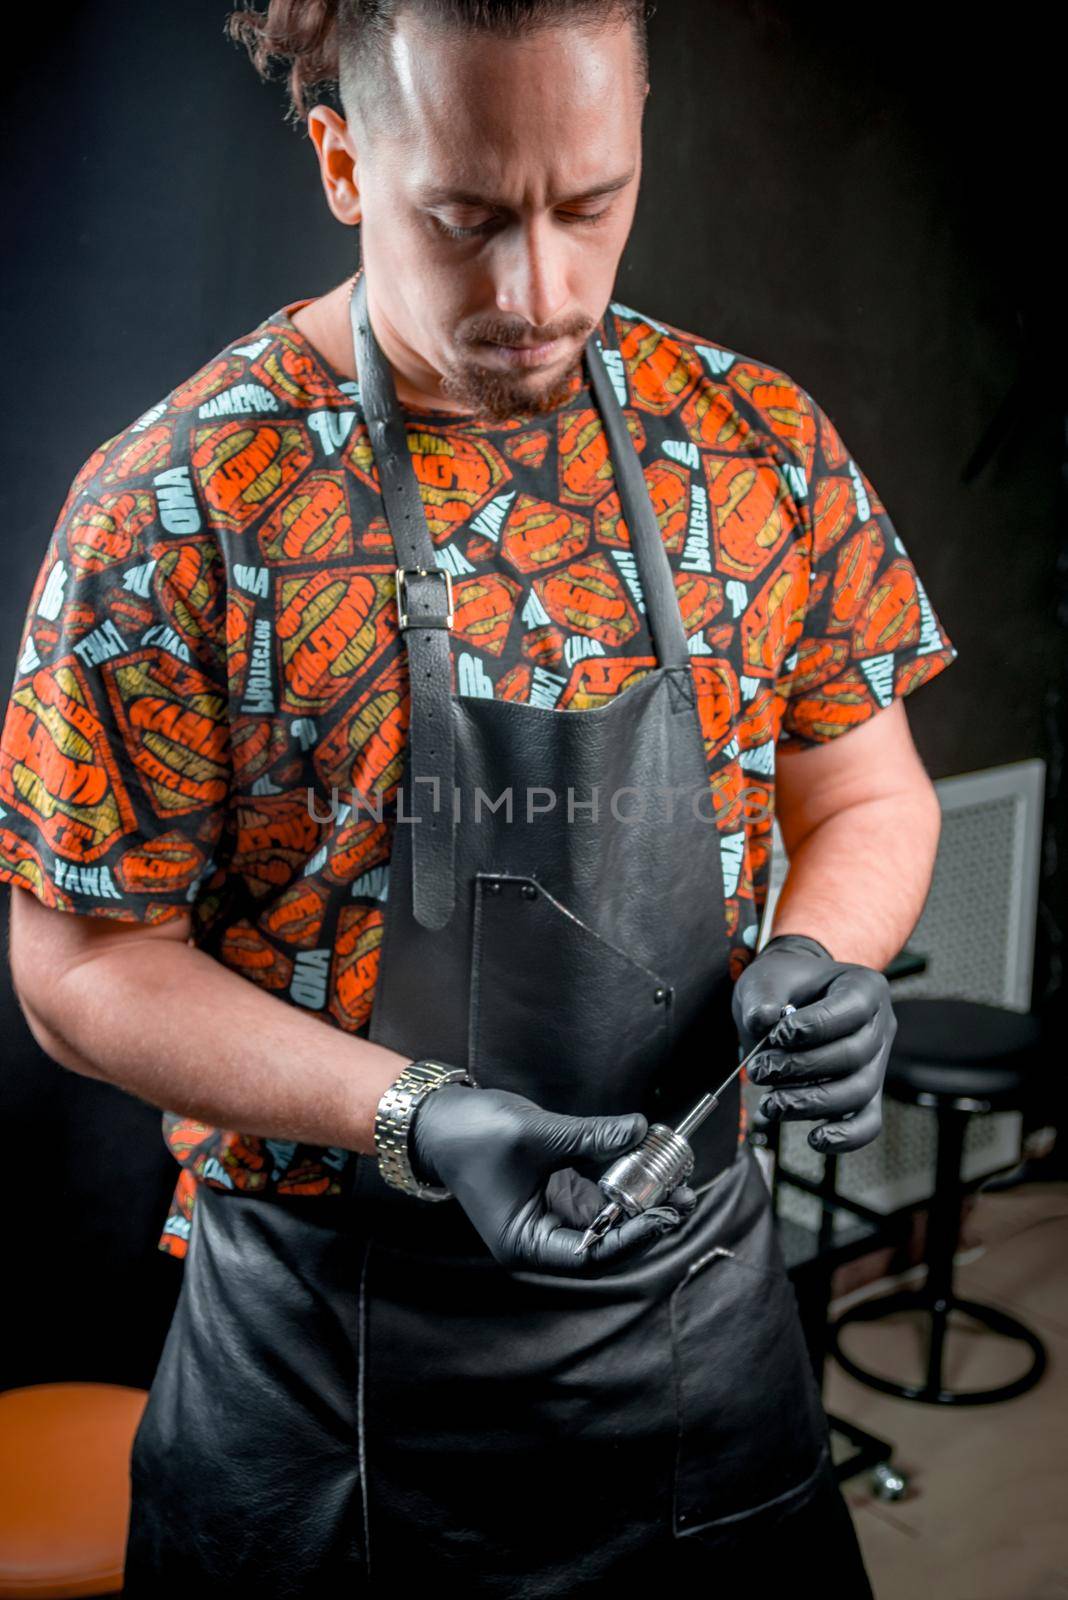 Tattoo specialist with a tattoo gun in a tattoo studio by Proff